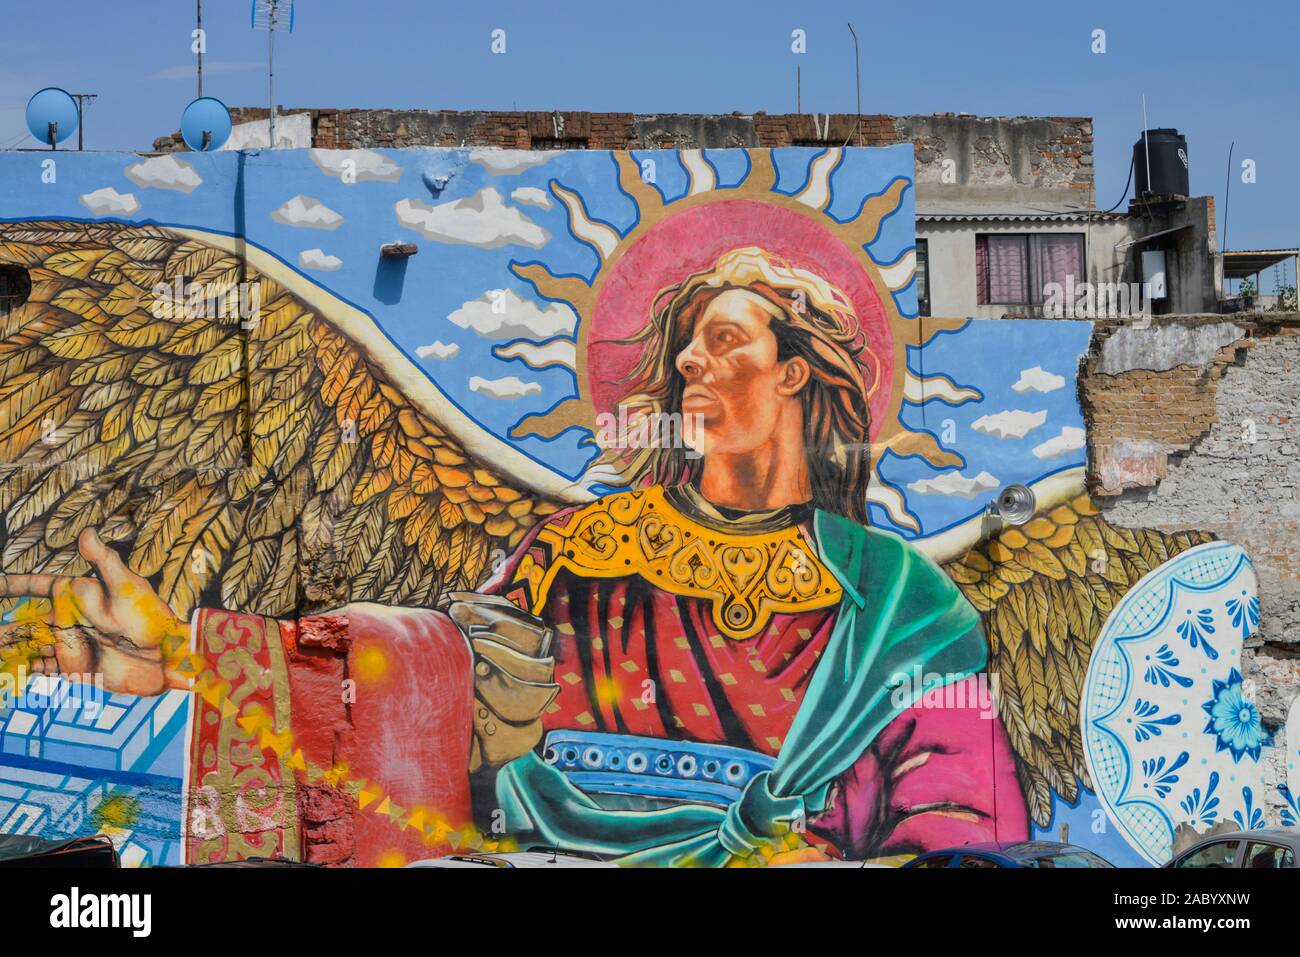 Wandmalerei, Barrio de Xanenetla, Puebla, Mexiko Foto Stock